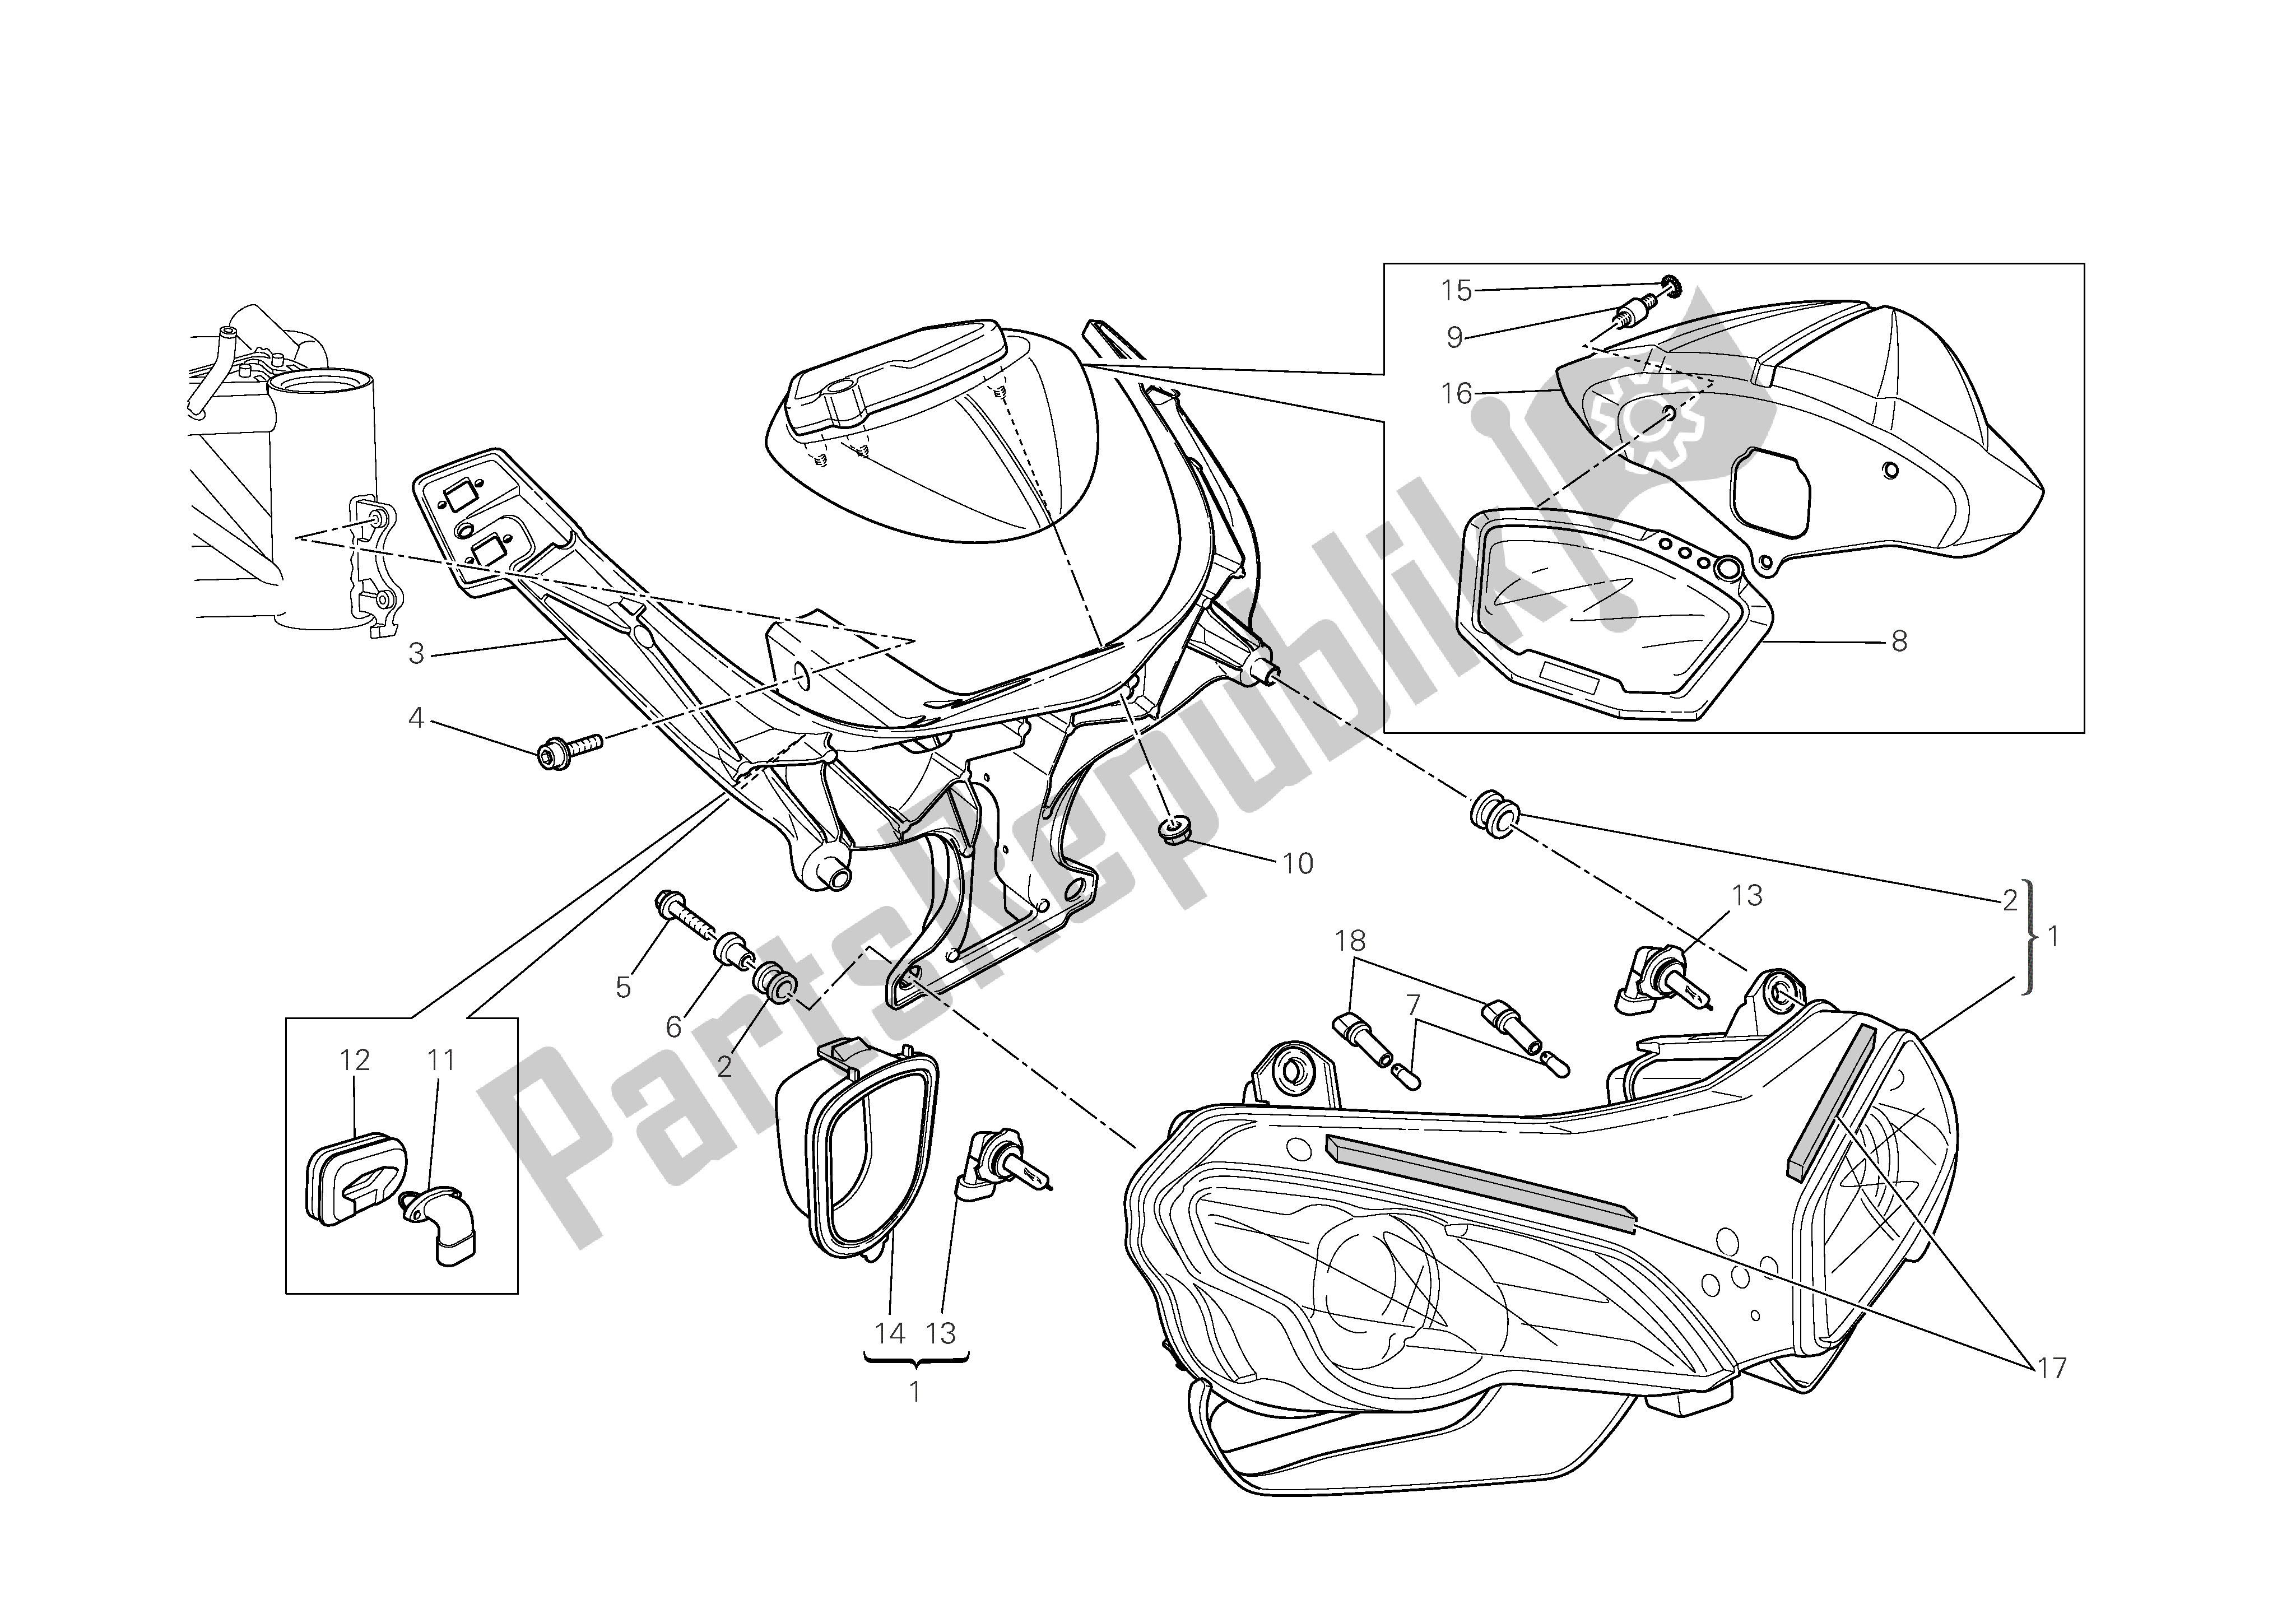 Alle onderdelen voor de Koplamp & Instr. Paneel van de Ducati 1098 R Bayliss 2009